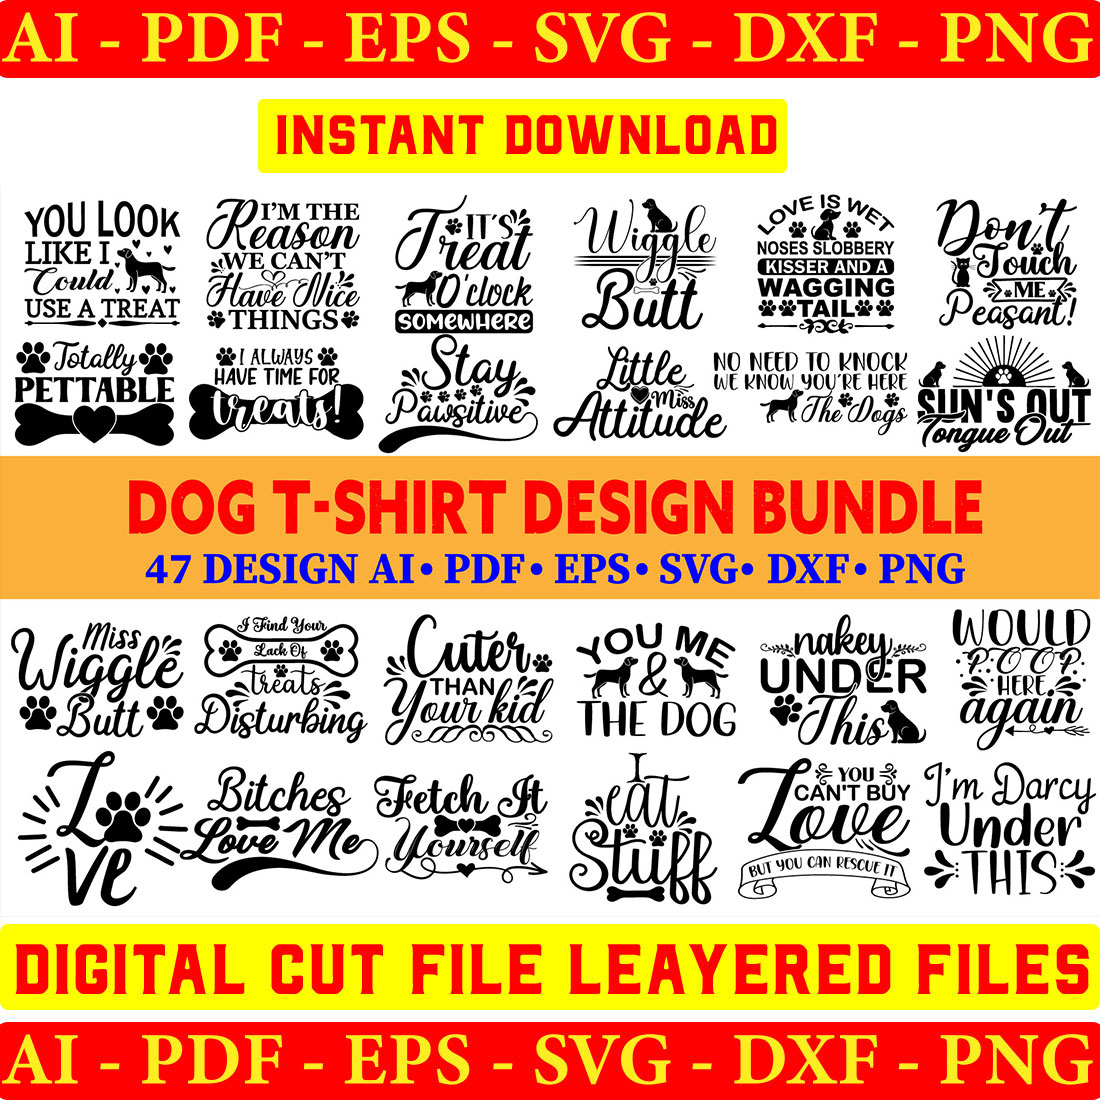 Dog T-shirt Design Bundle cover image.